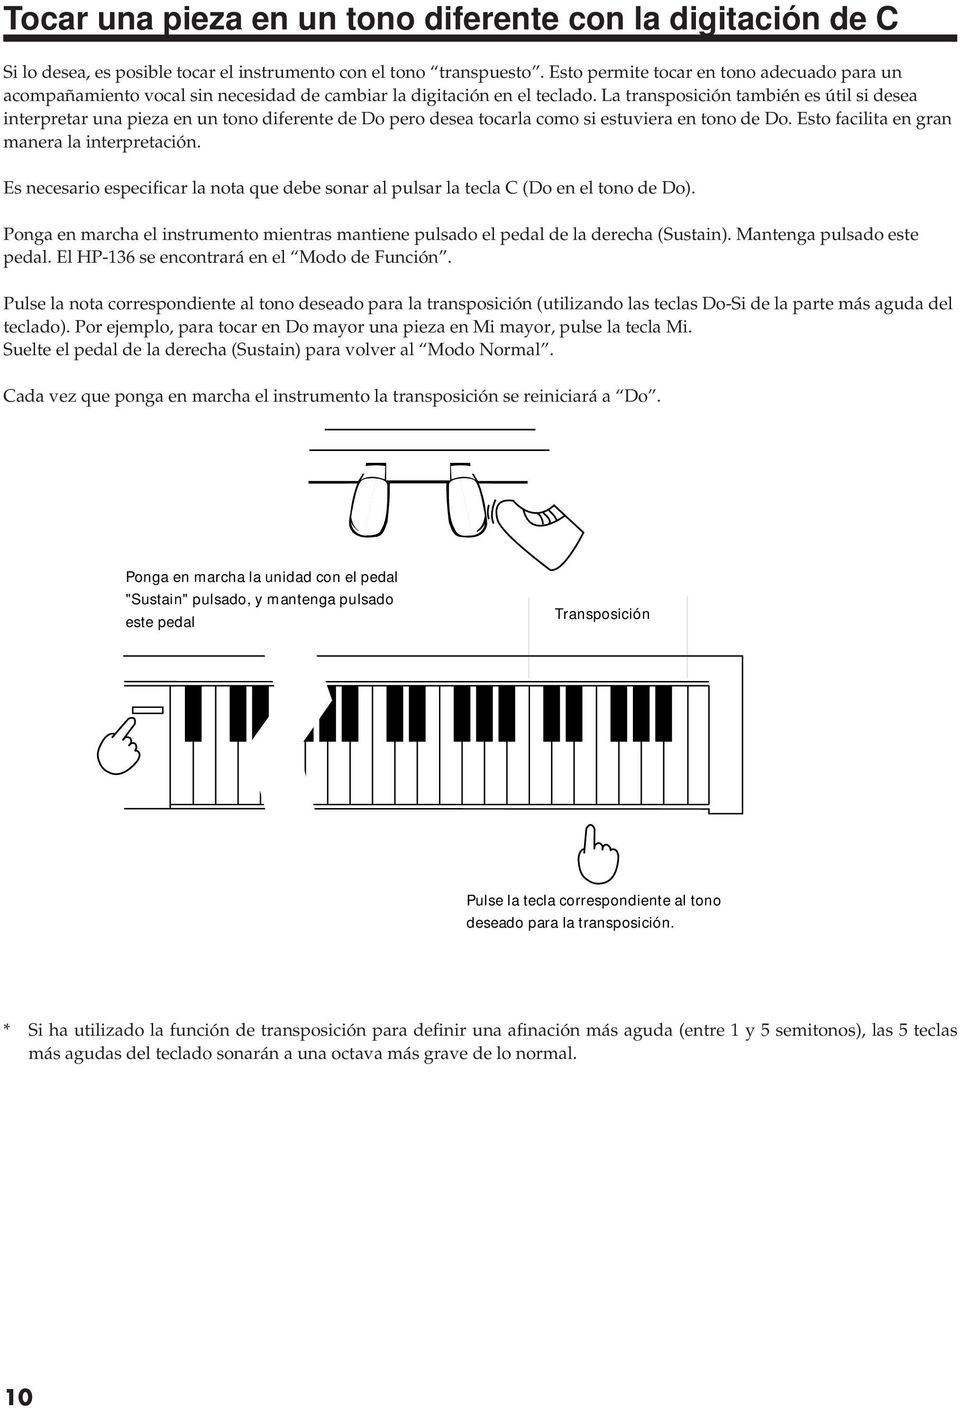 La transposición también es útil si desea interpretar una pieza en un tono diferente de Do pero desea tocarla como si estuviera en tono de Do. Esto facilita en gran manera la interpretación.